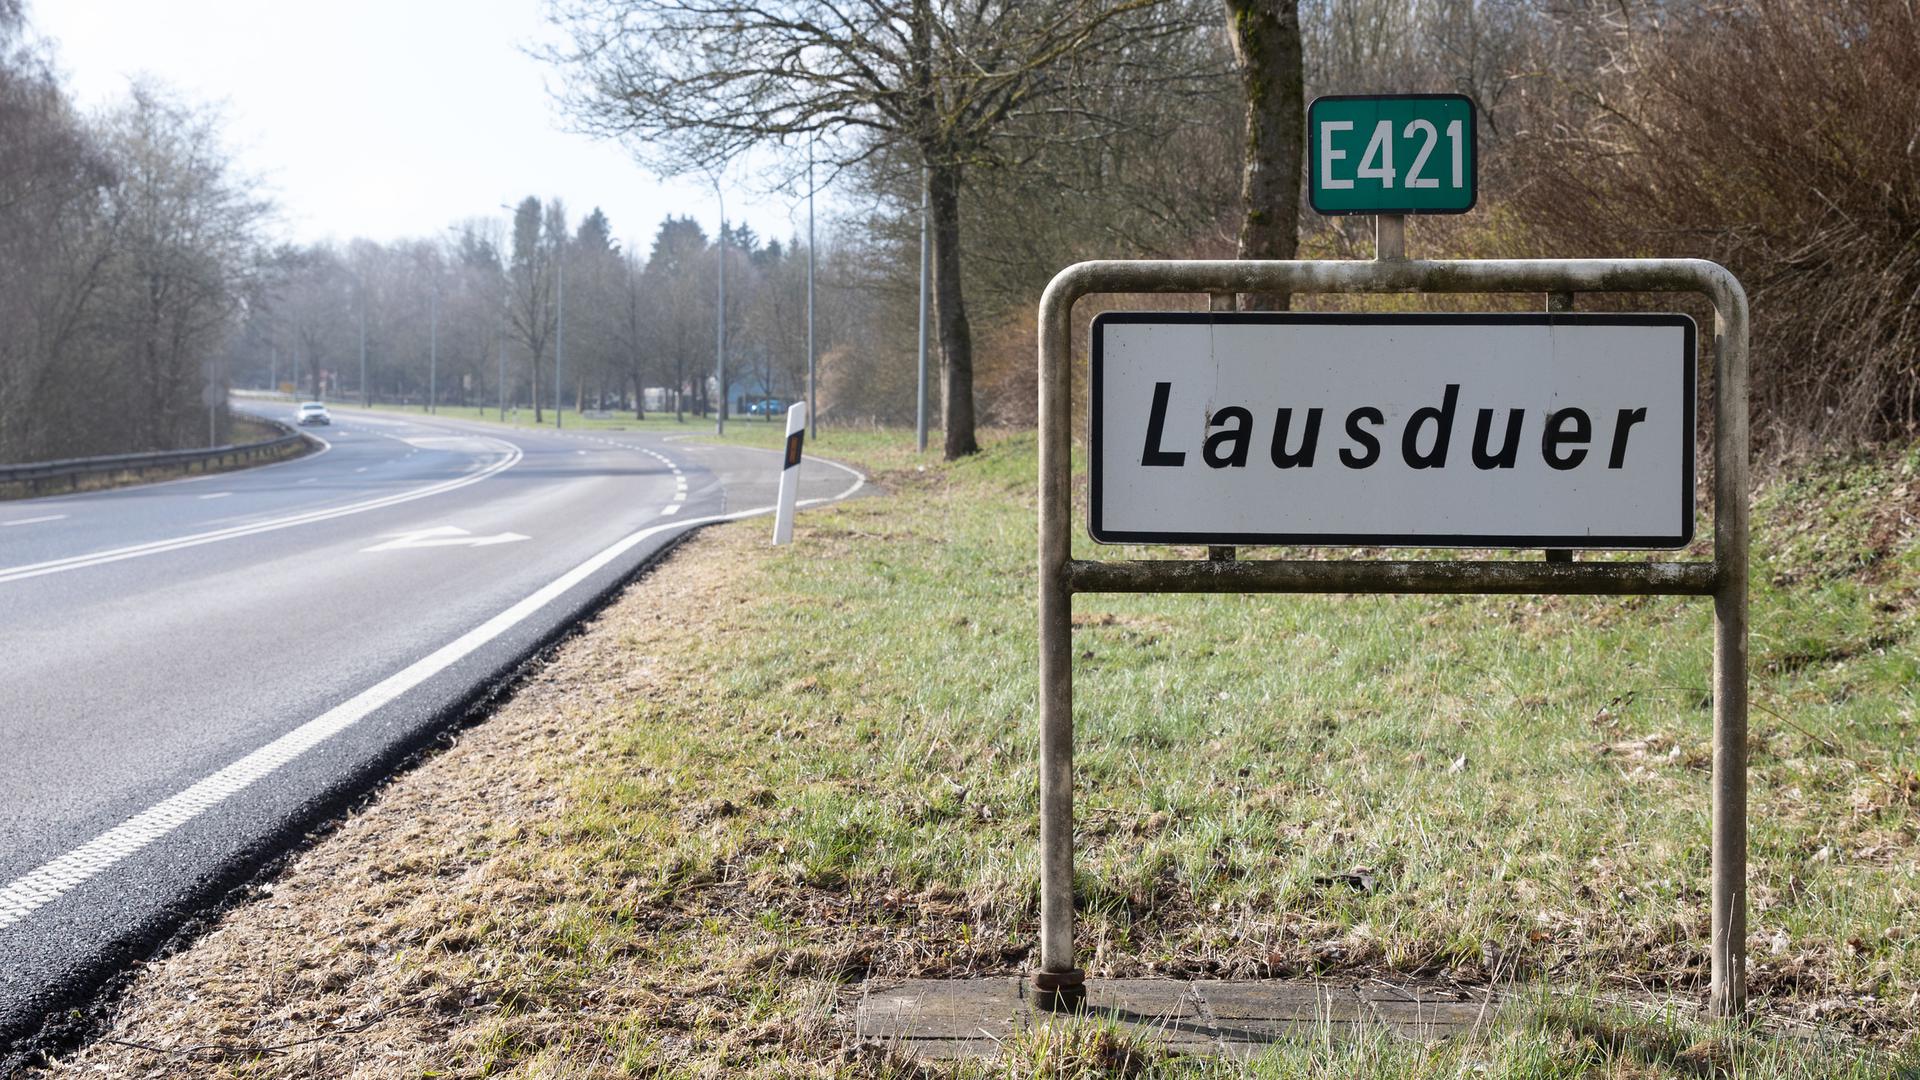 Les faits se sont produits à cette intersection à Lausdorn au petit matin du 14 avril 2018.